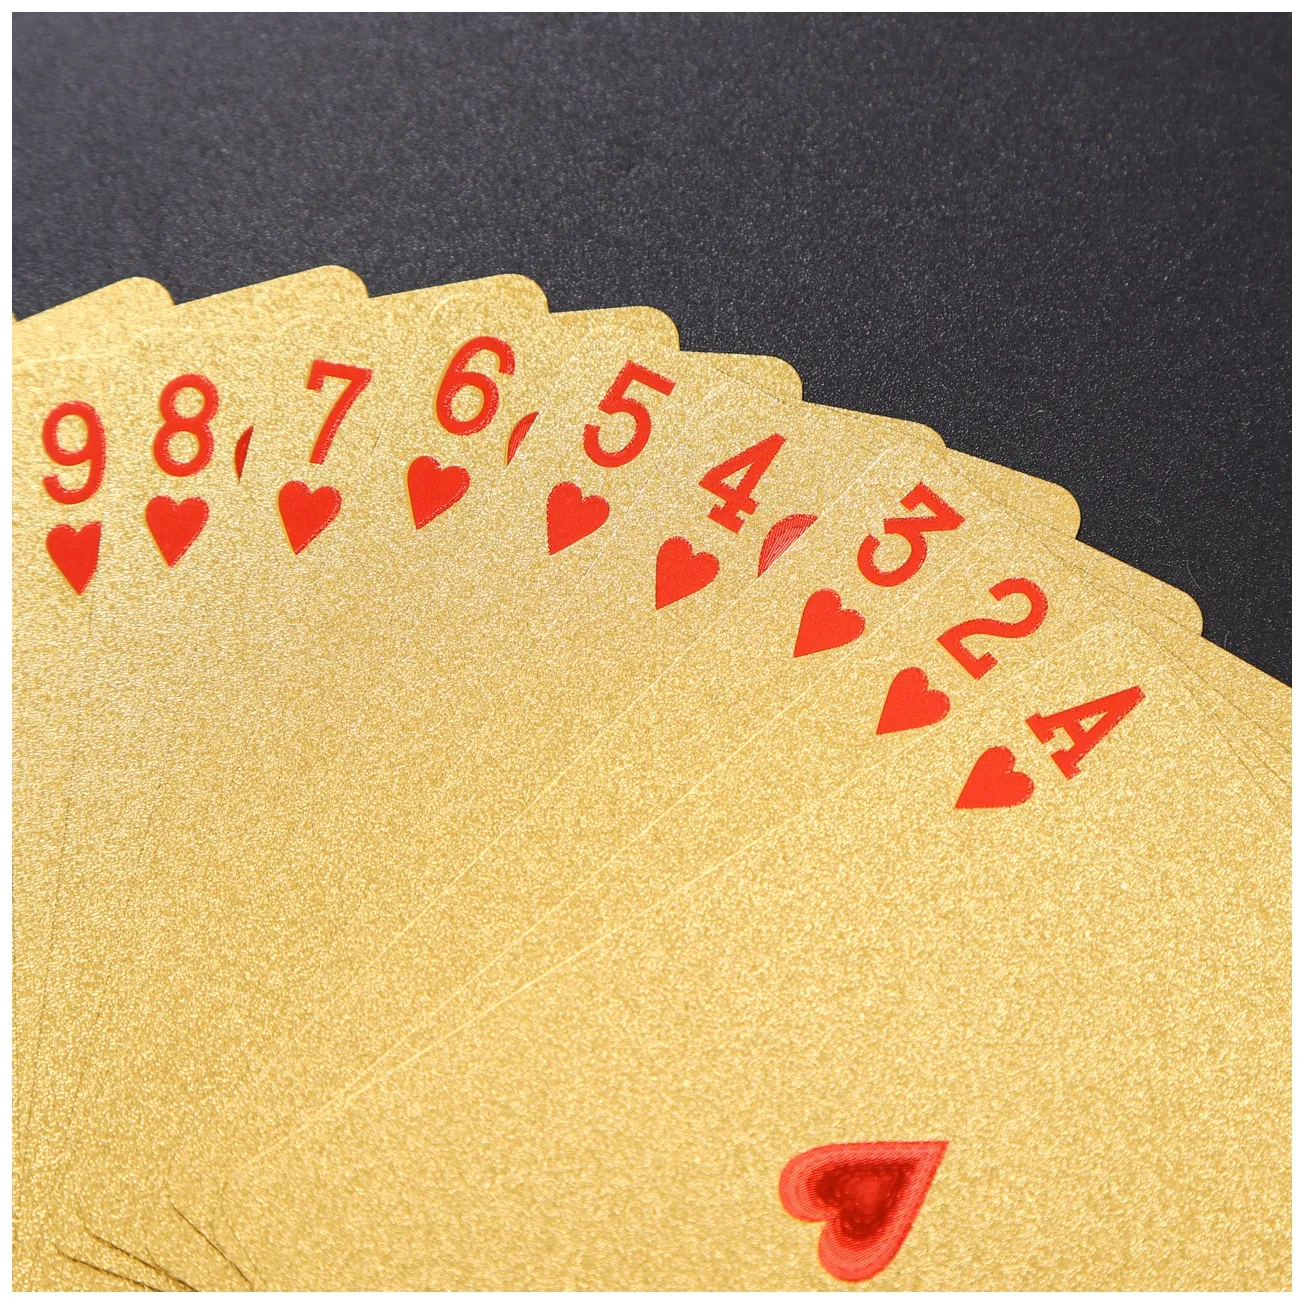 Baralho de plástico para jogos de poker, cartas lisas e à prova d'água para uso de poker